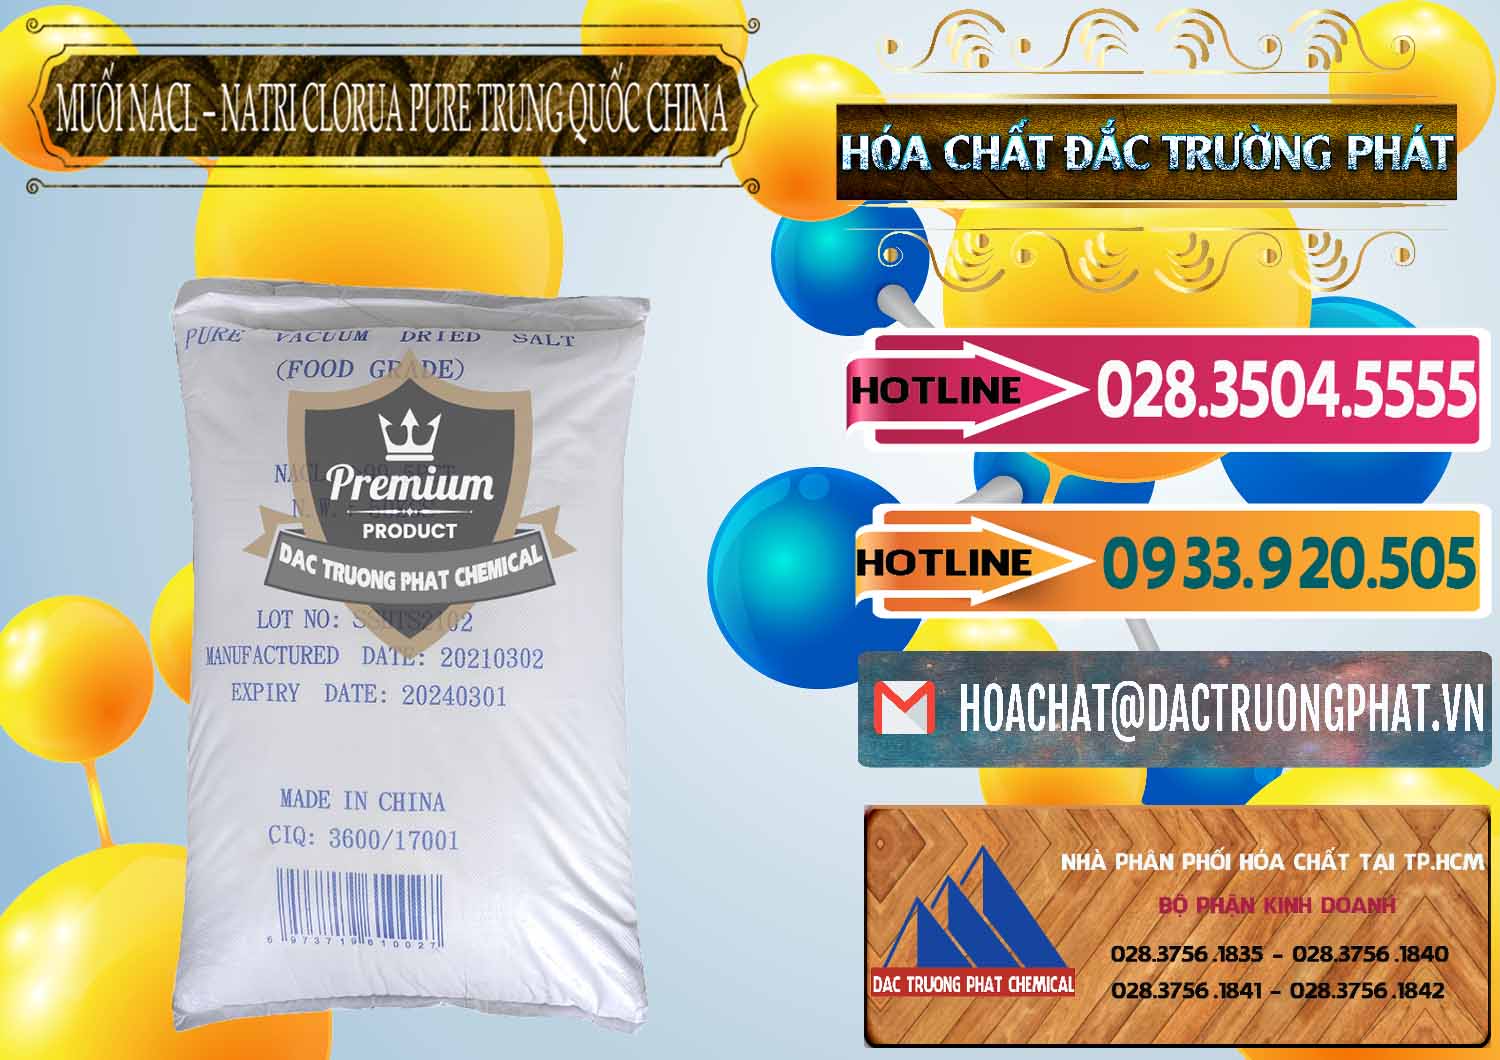 Công ty chuyên bán - cung cấp Muối NaCL – Sodium Chloride Pure Trung Quốc China - 0230 - Nơi cung ứng - phân phối hóa chất tại TP.HCM - dactruongphat.vn